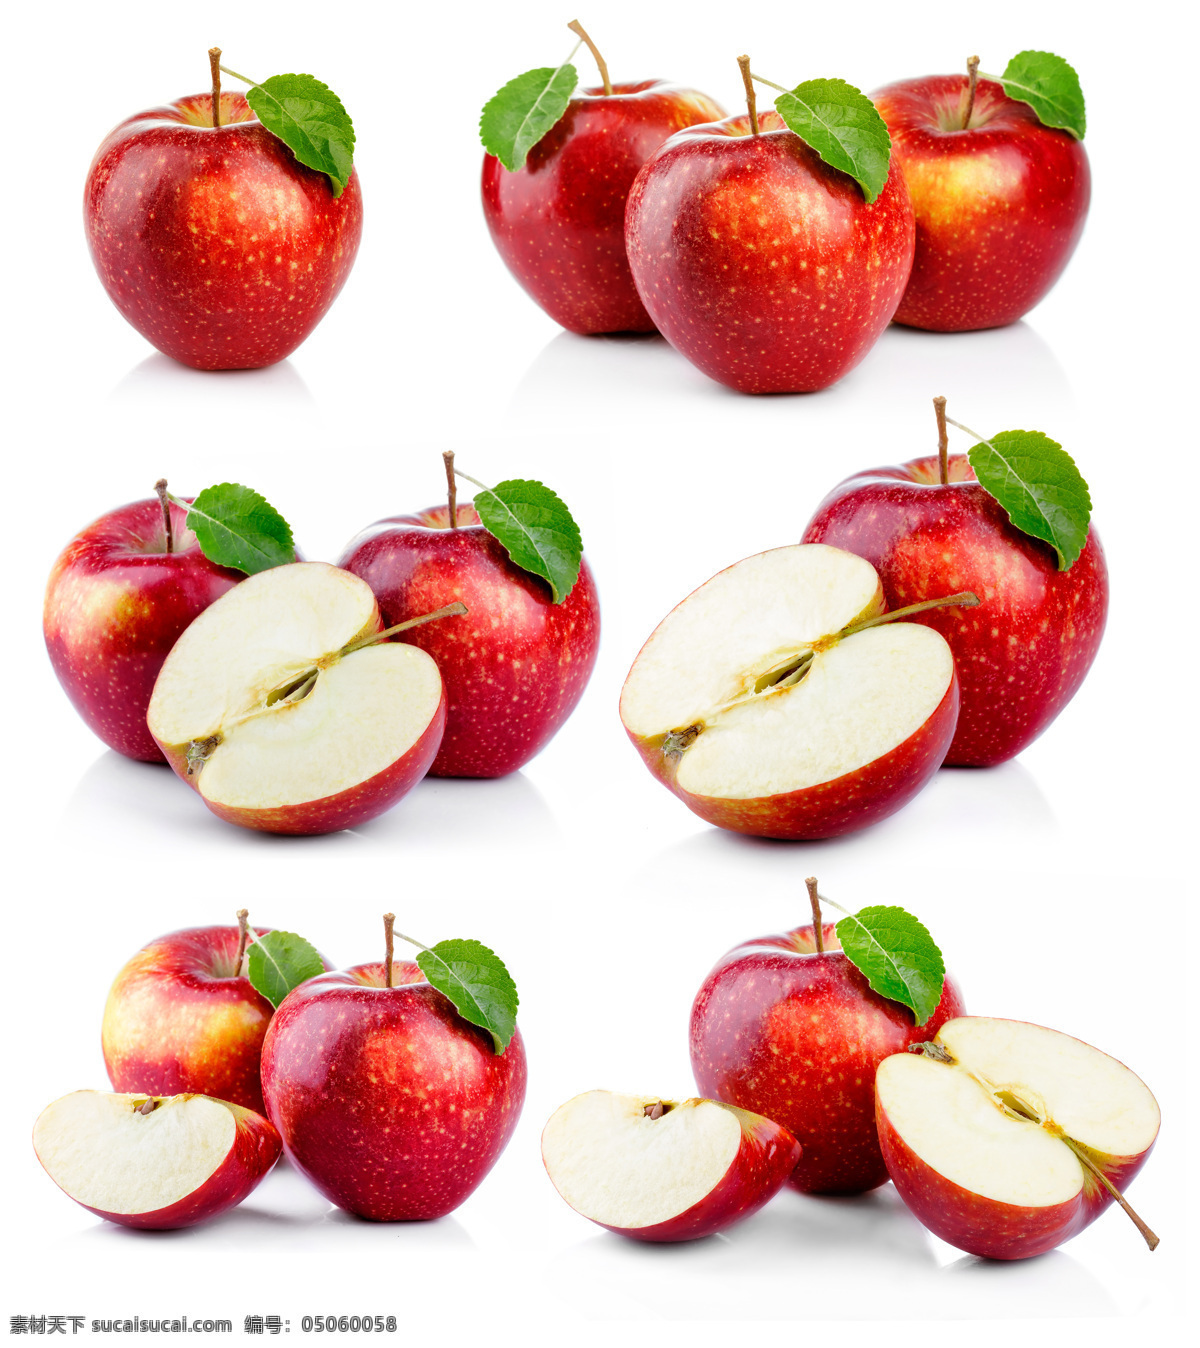 青苹果 冰糖心苹果 富士苹果 平安果 成熟苹果 新鲜水果 新鲜苹果 甜苹果 红富士 红富士苹果 红苹果 维生素 苹果摄影 苹果摄影素材 高清苹果图片 餐饮美食 食物原料